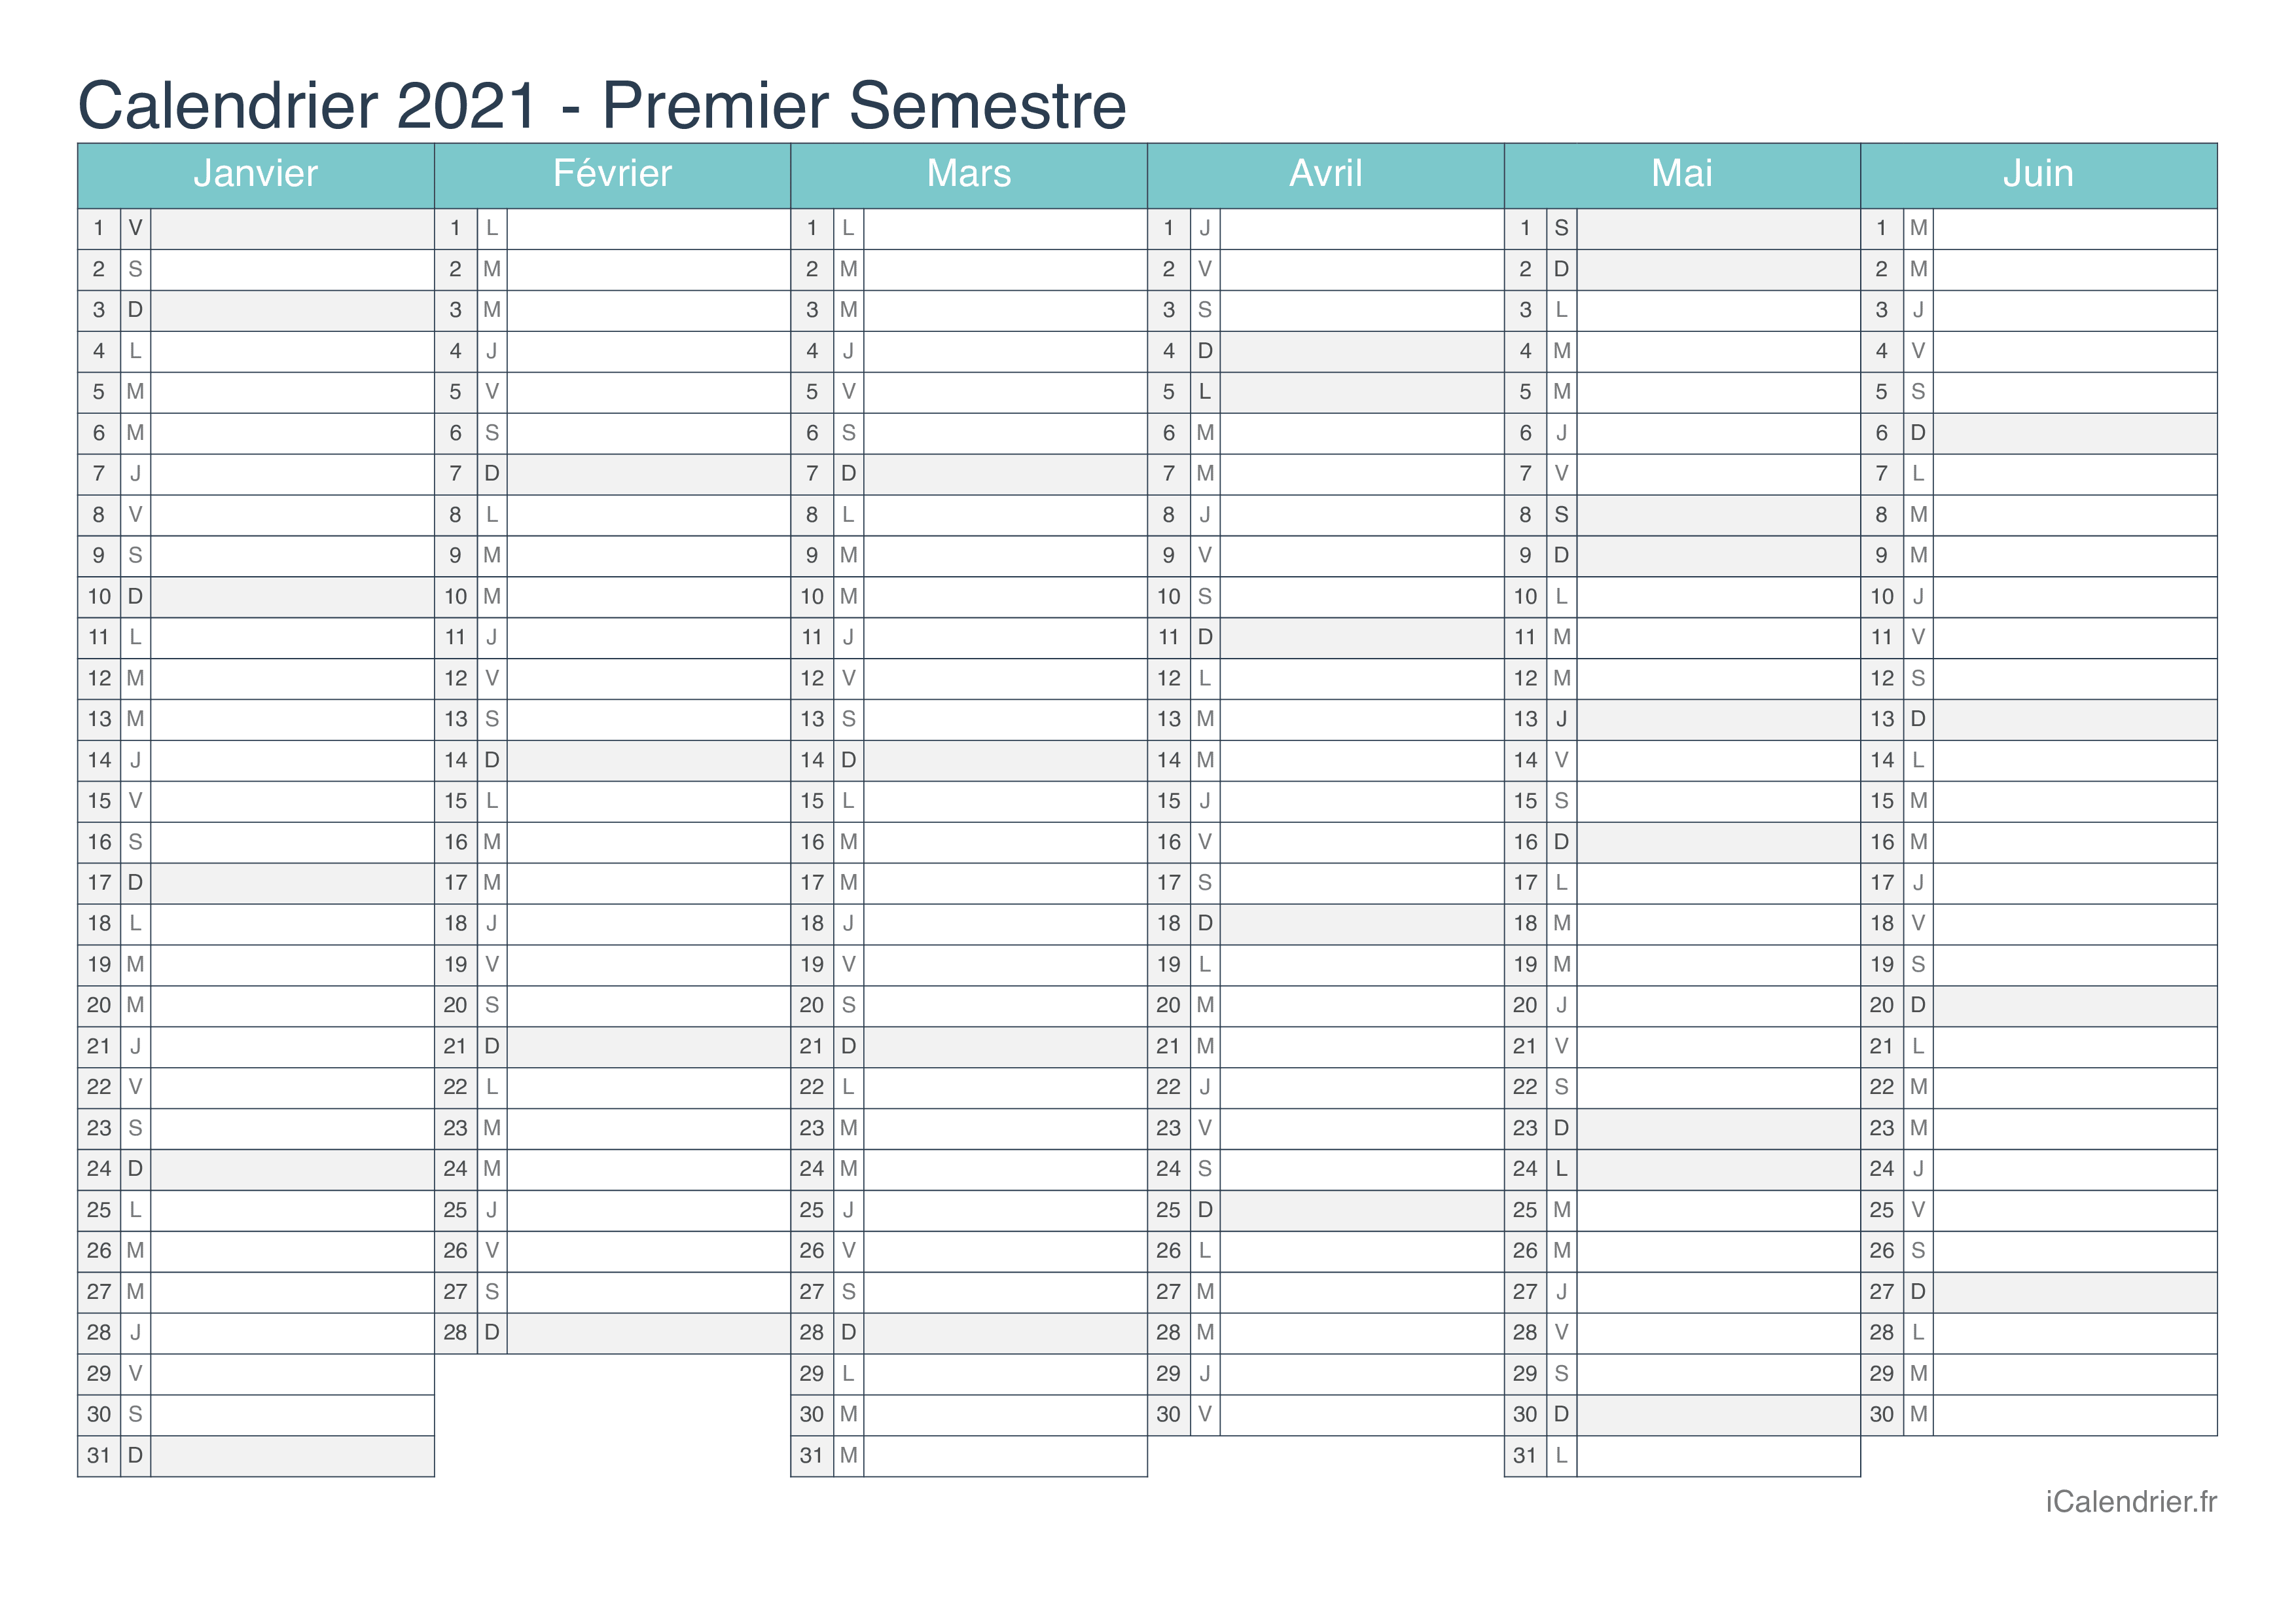 Calendrier Premier Semestre 2021 à Imprimer Calendrier 2021 à imprimer PDF et Excel   iCalendrier